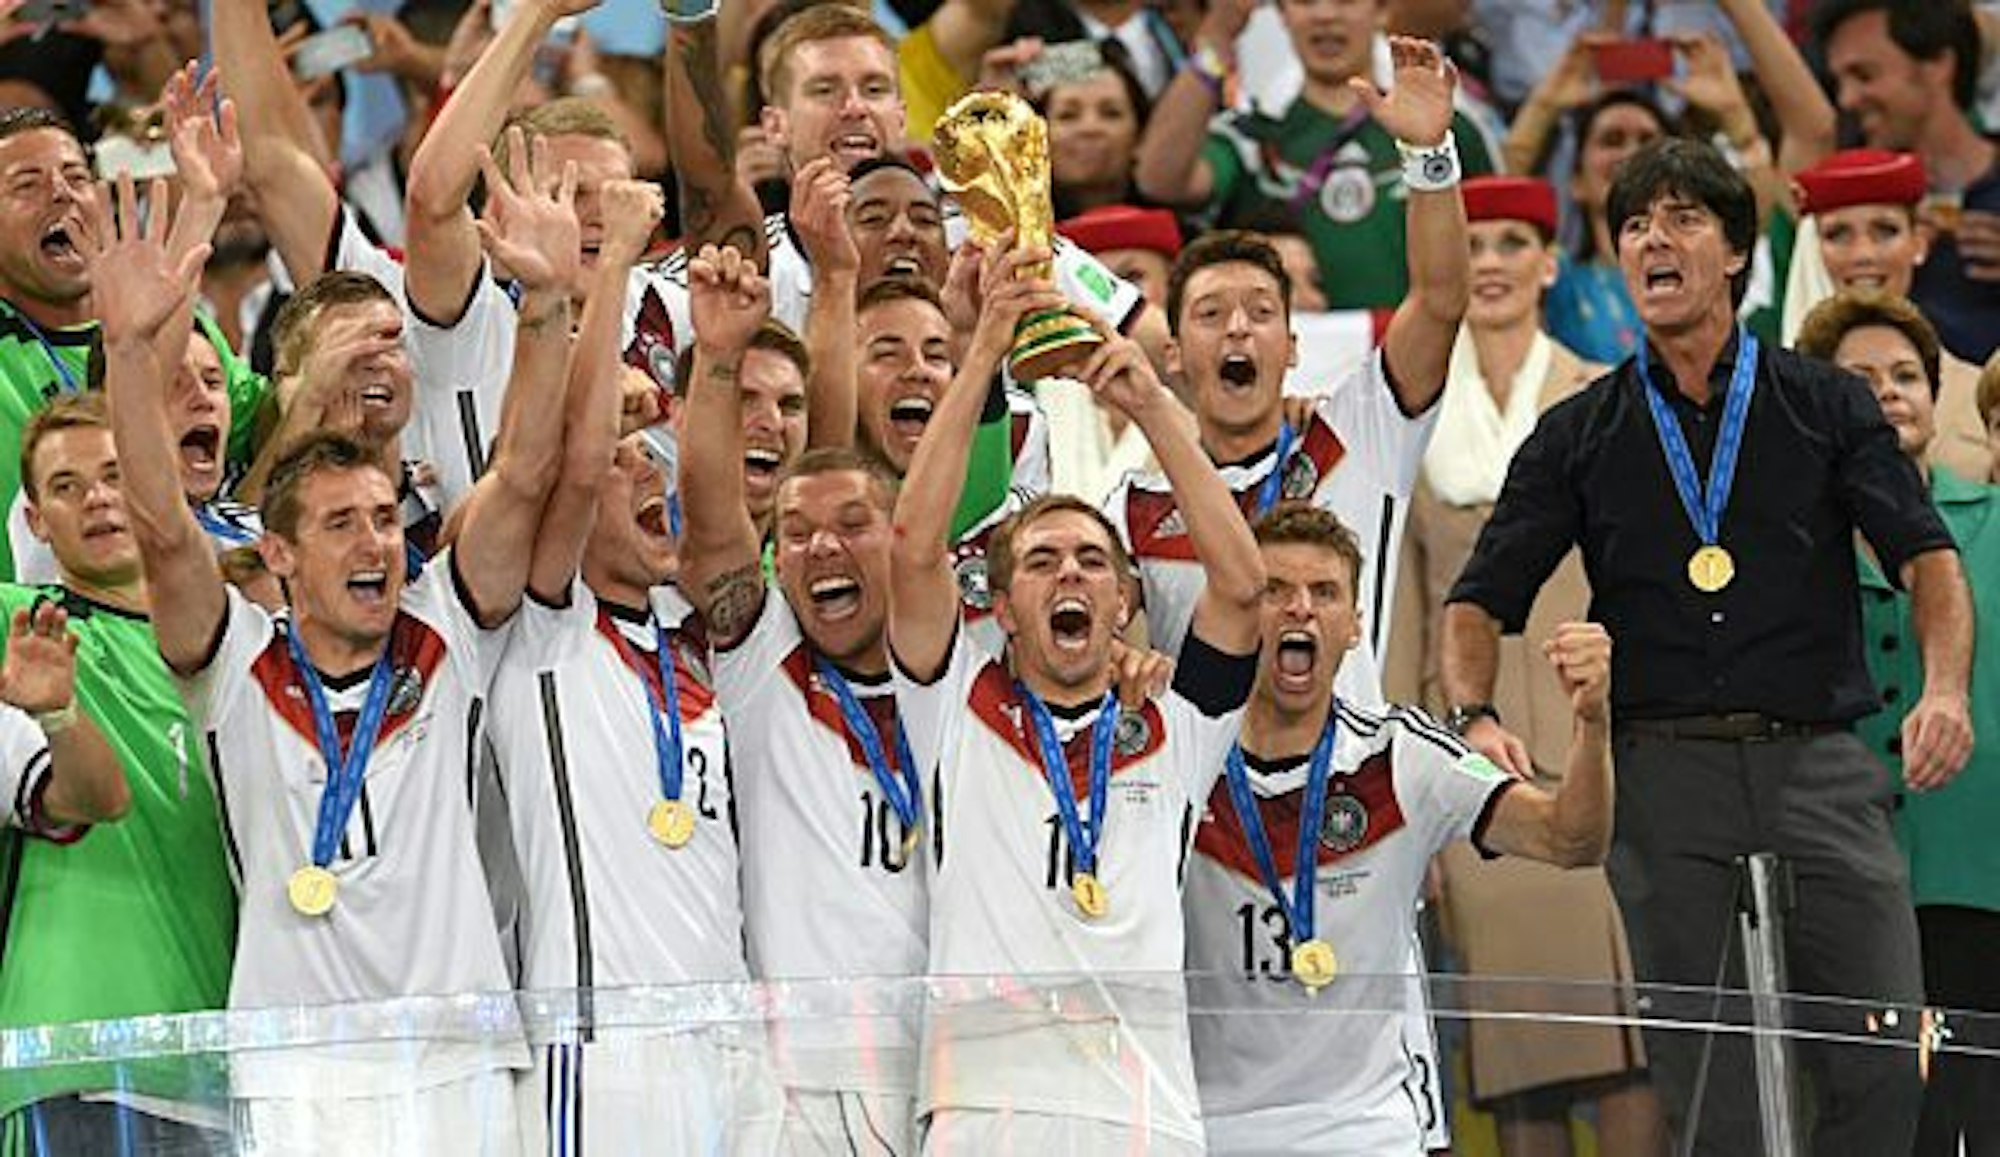 Die Deutsche Nationalmannschaft feiert den WM-Titel gegen Argentinien. Kapitän Lahm streckt den Pokal in die Luft.